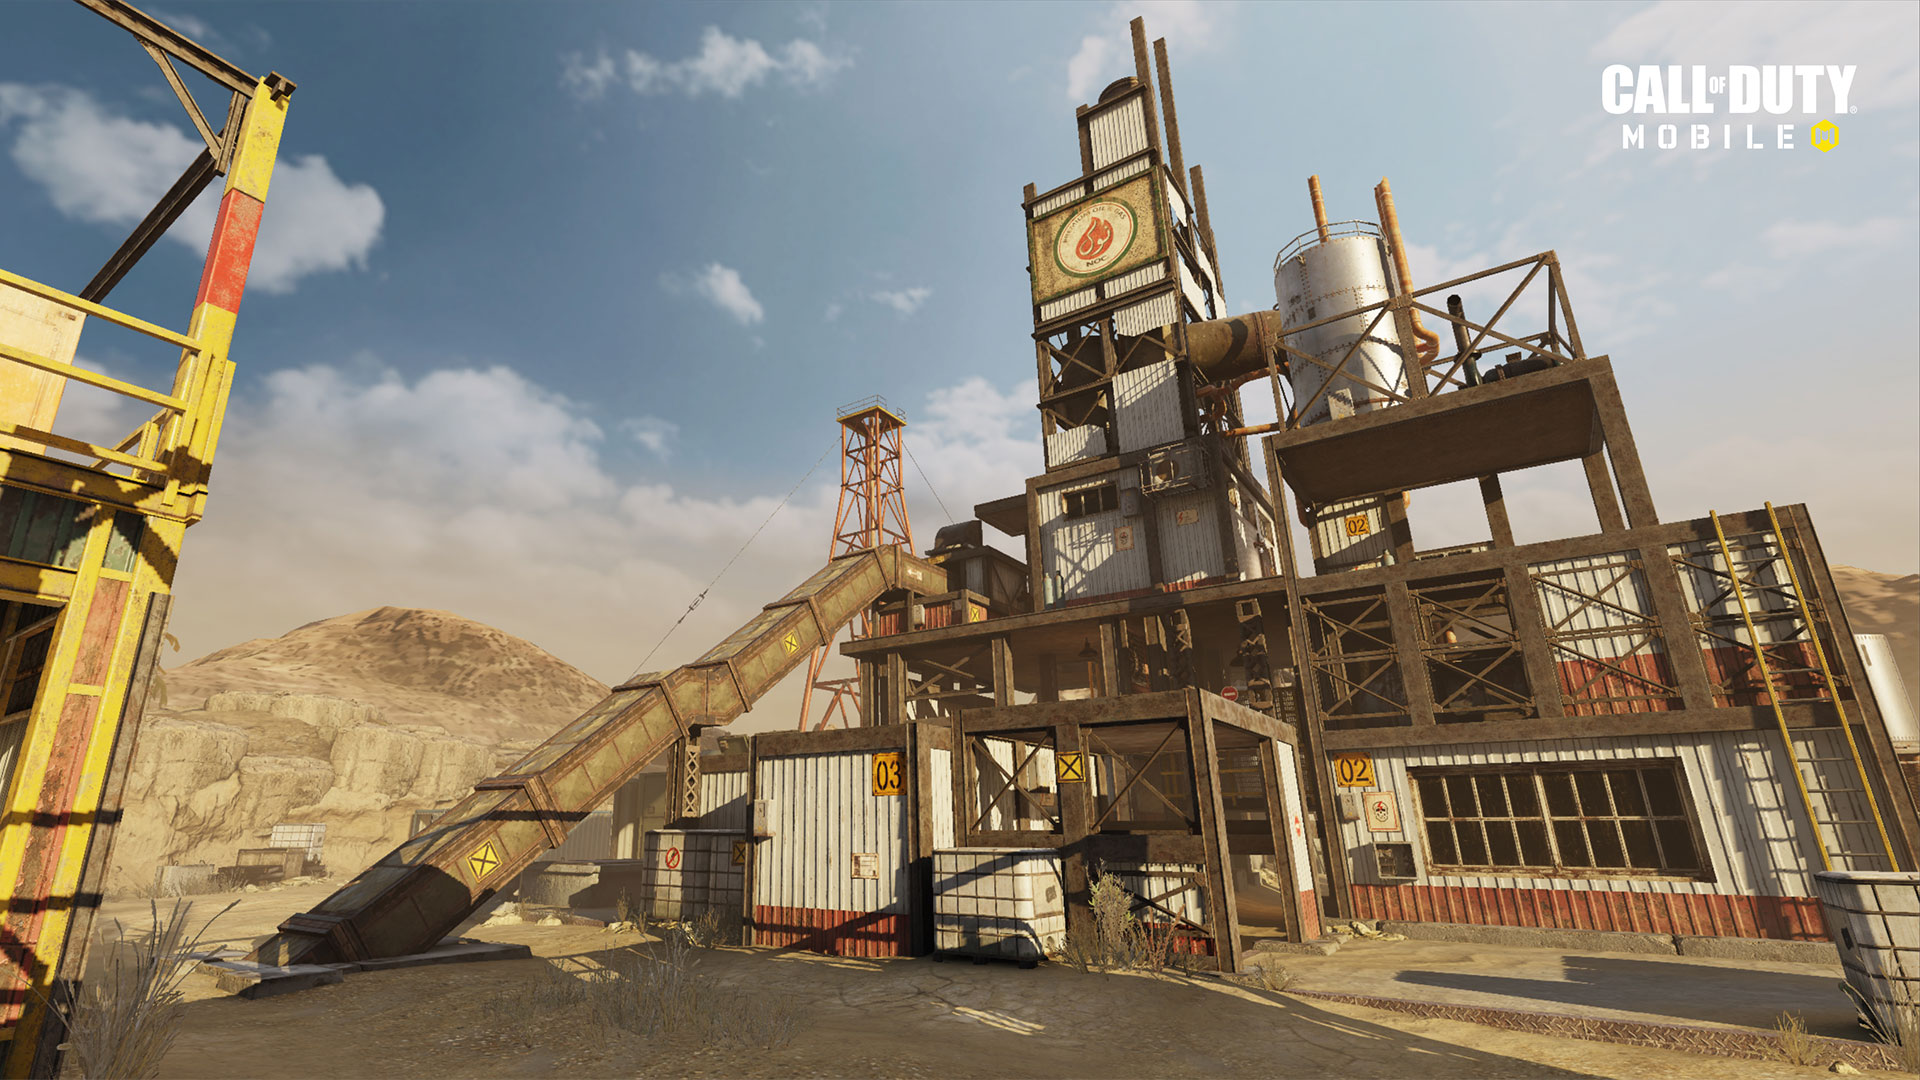 الإصدار 1.0.12 من "Call of Duty: Mobile" متاح الآن بشكل مباشر لتقديم الدعم للموسم التالي "ذات مرة في الصدأ" ، وخرائط جديدة ، وموسم جديد مصنّف ، والمزيد 132